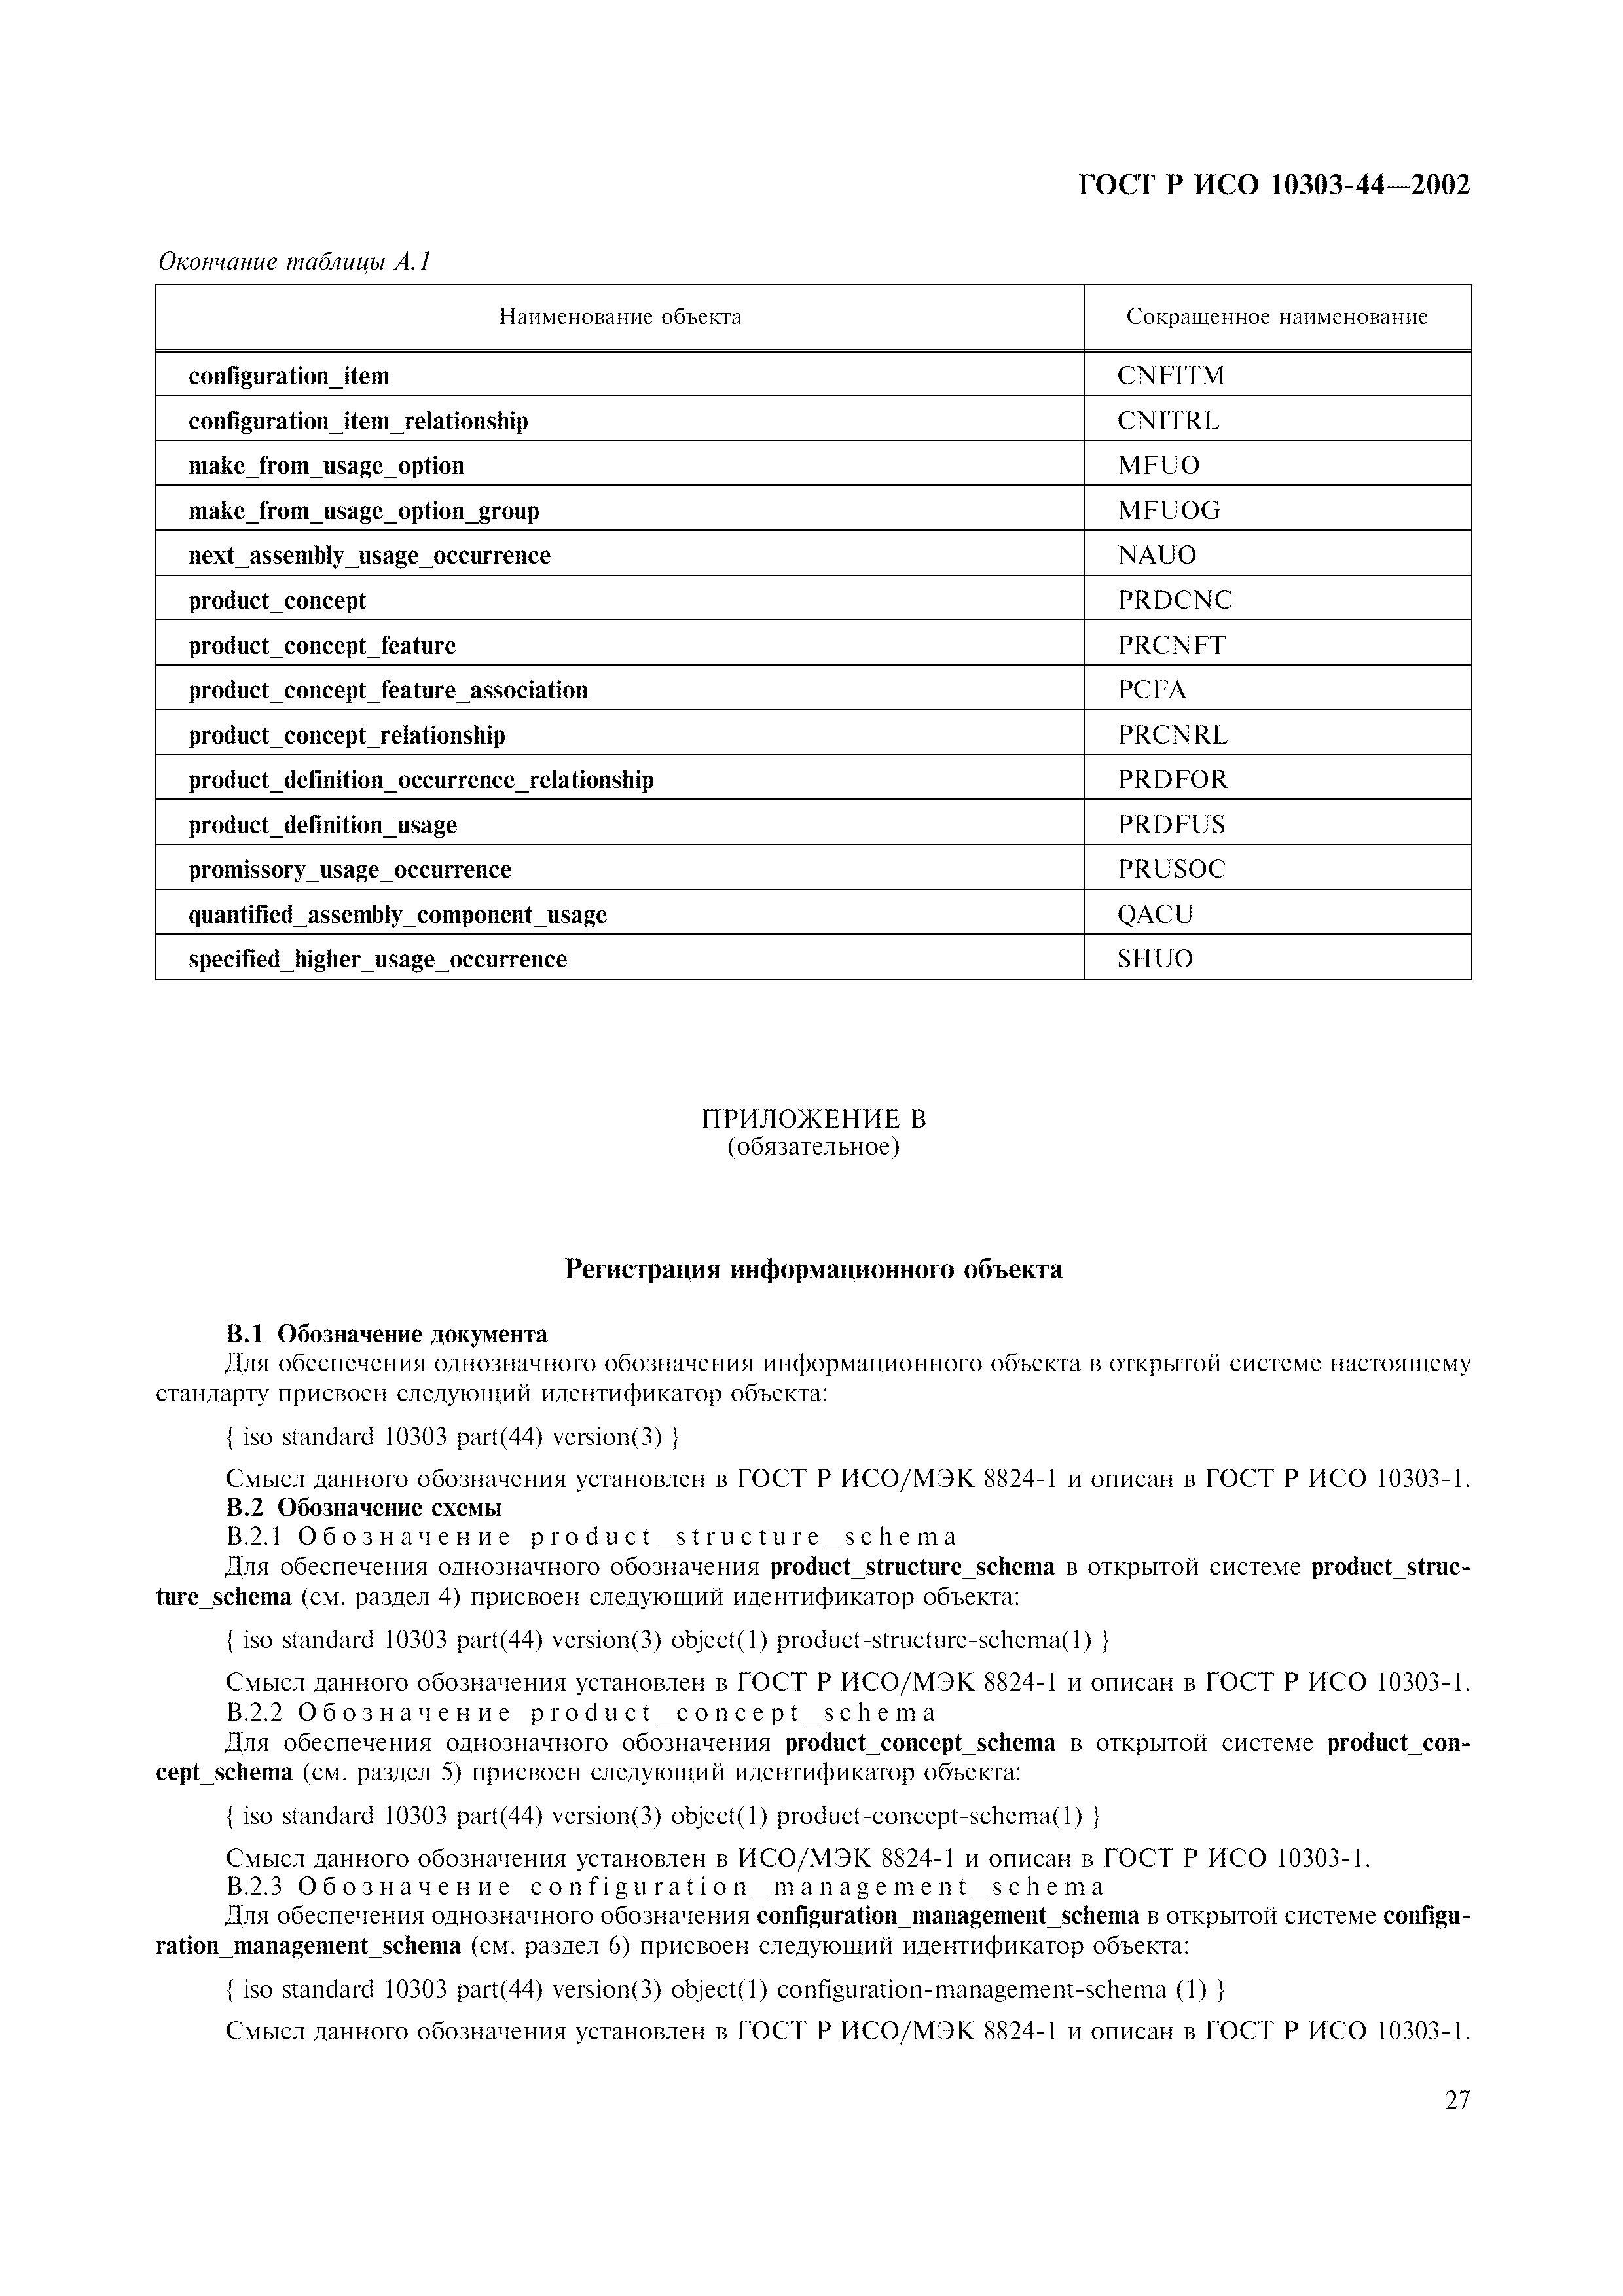 ГОСТ Р ИСО 10303-44-2002